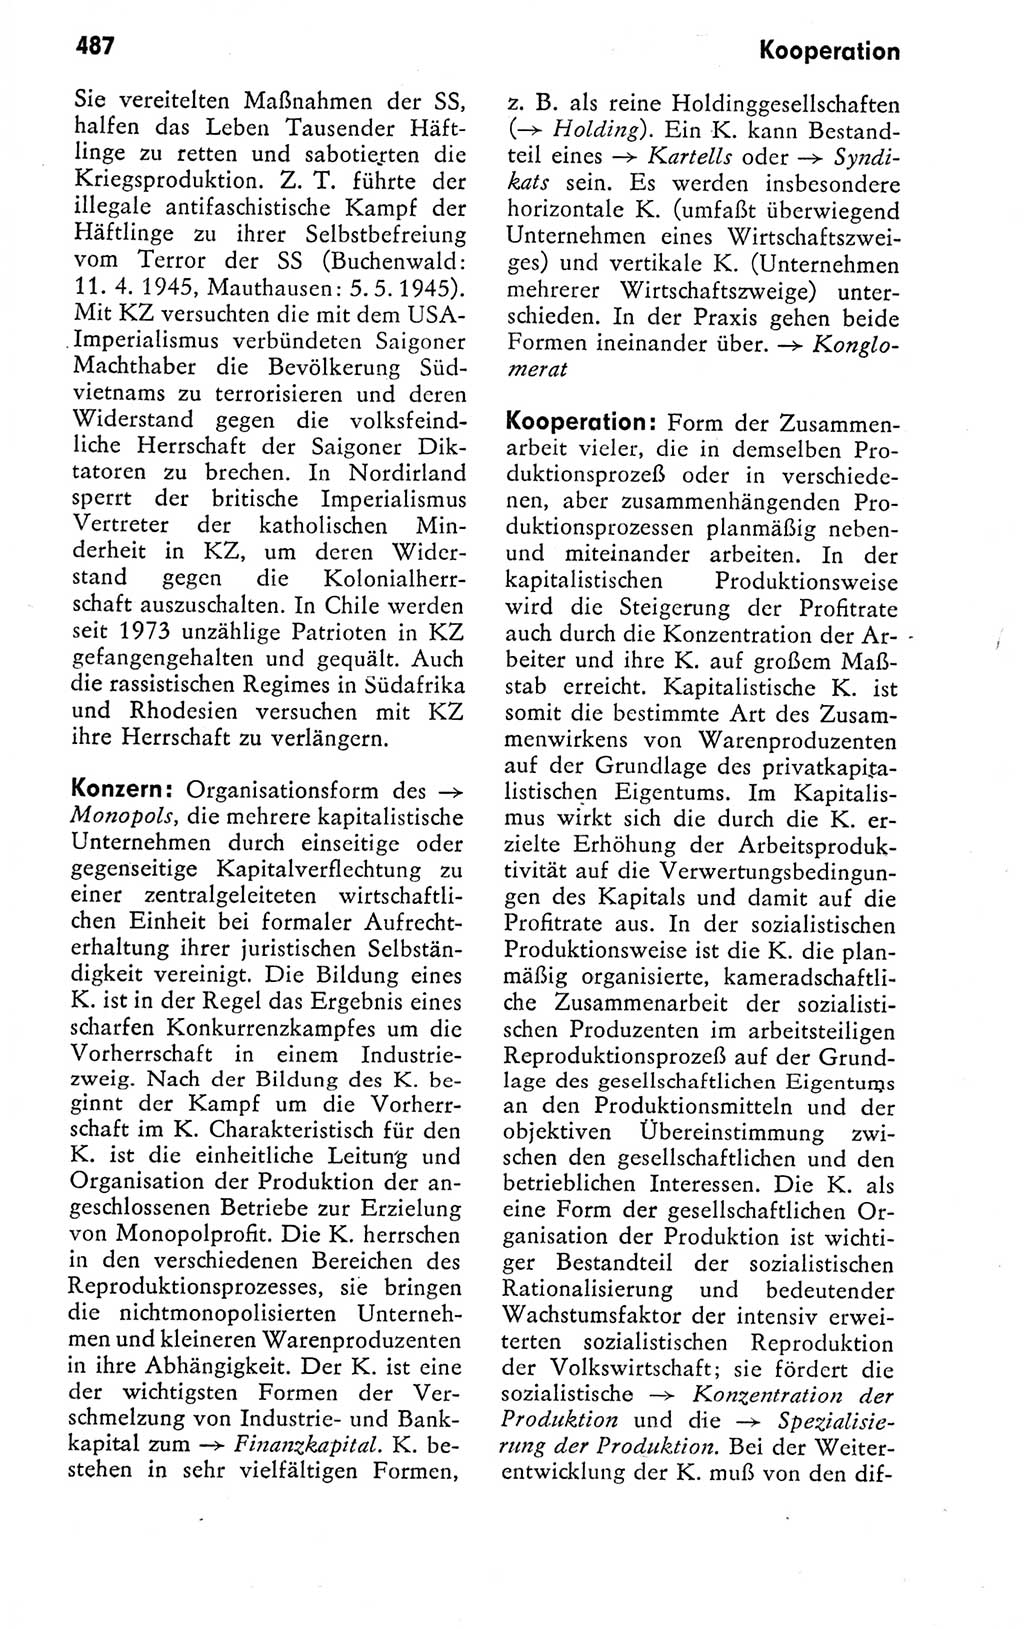 Kleines politisches Wörterbuch [Deutsche Demokratische Republik (DDR)] 1978, Seite 487 (Kl. pol. Wb. DDR 1978, S. 487)